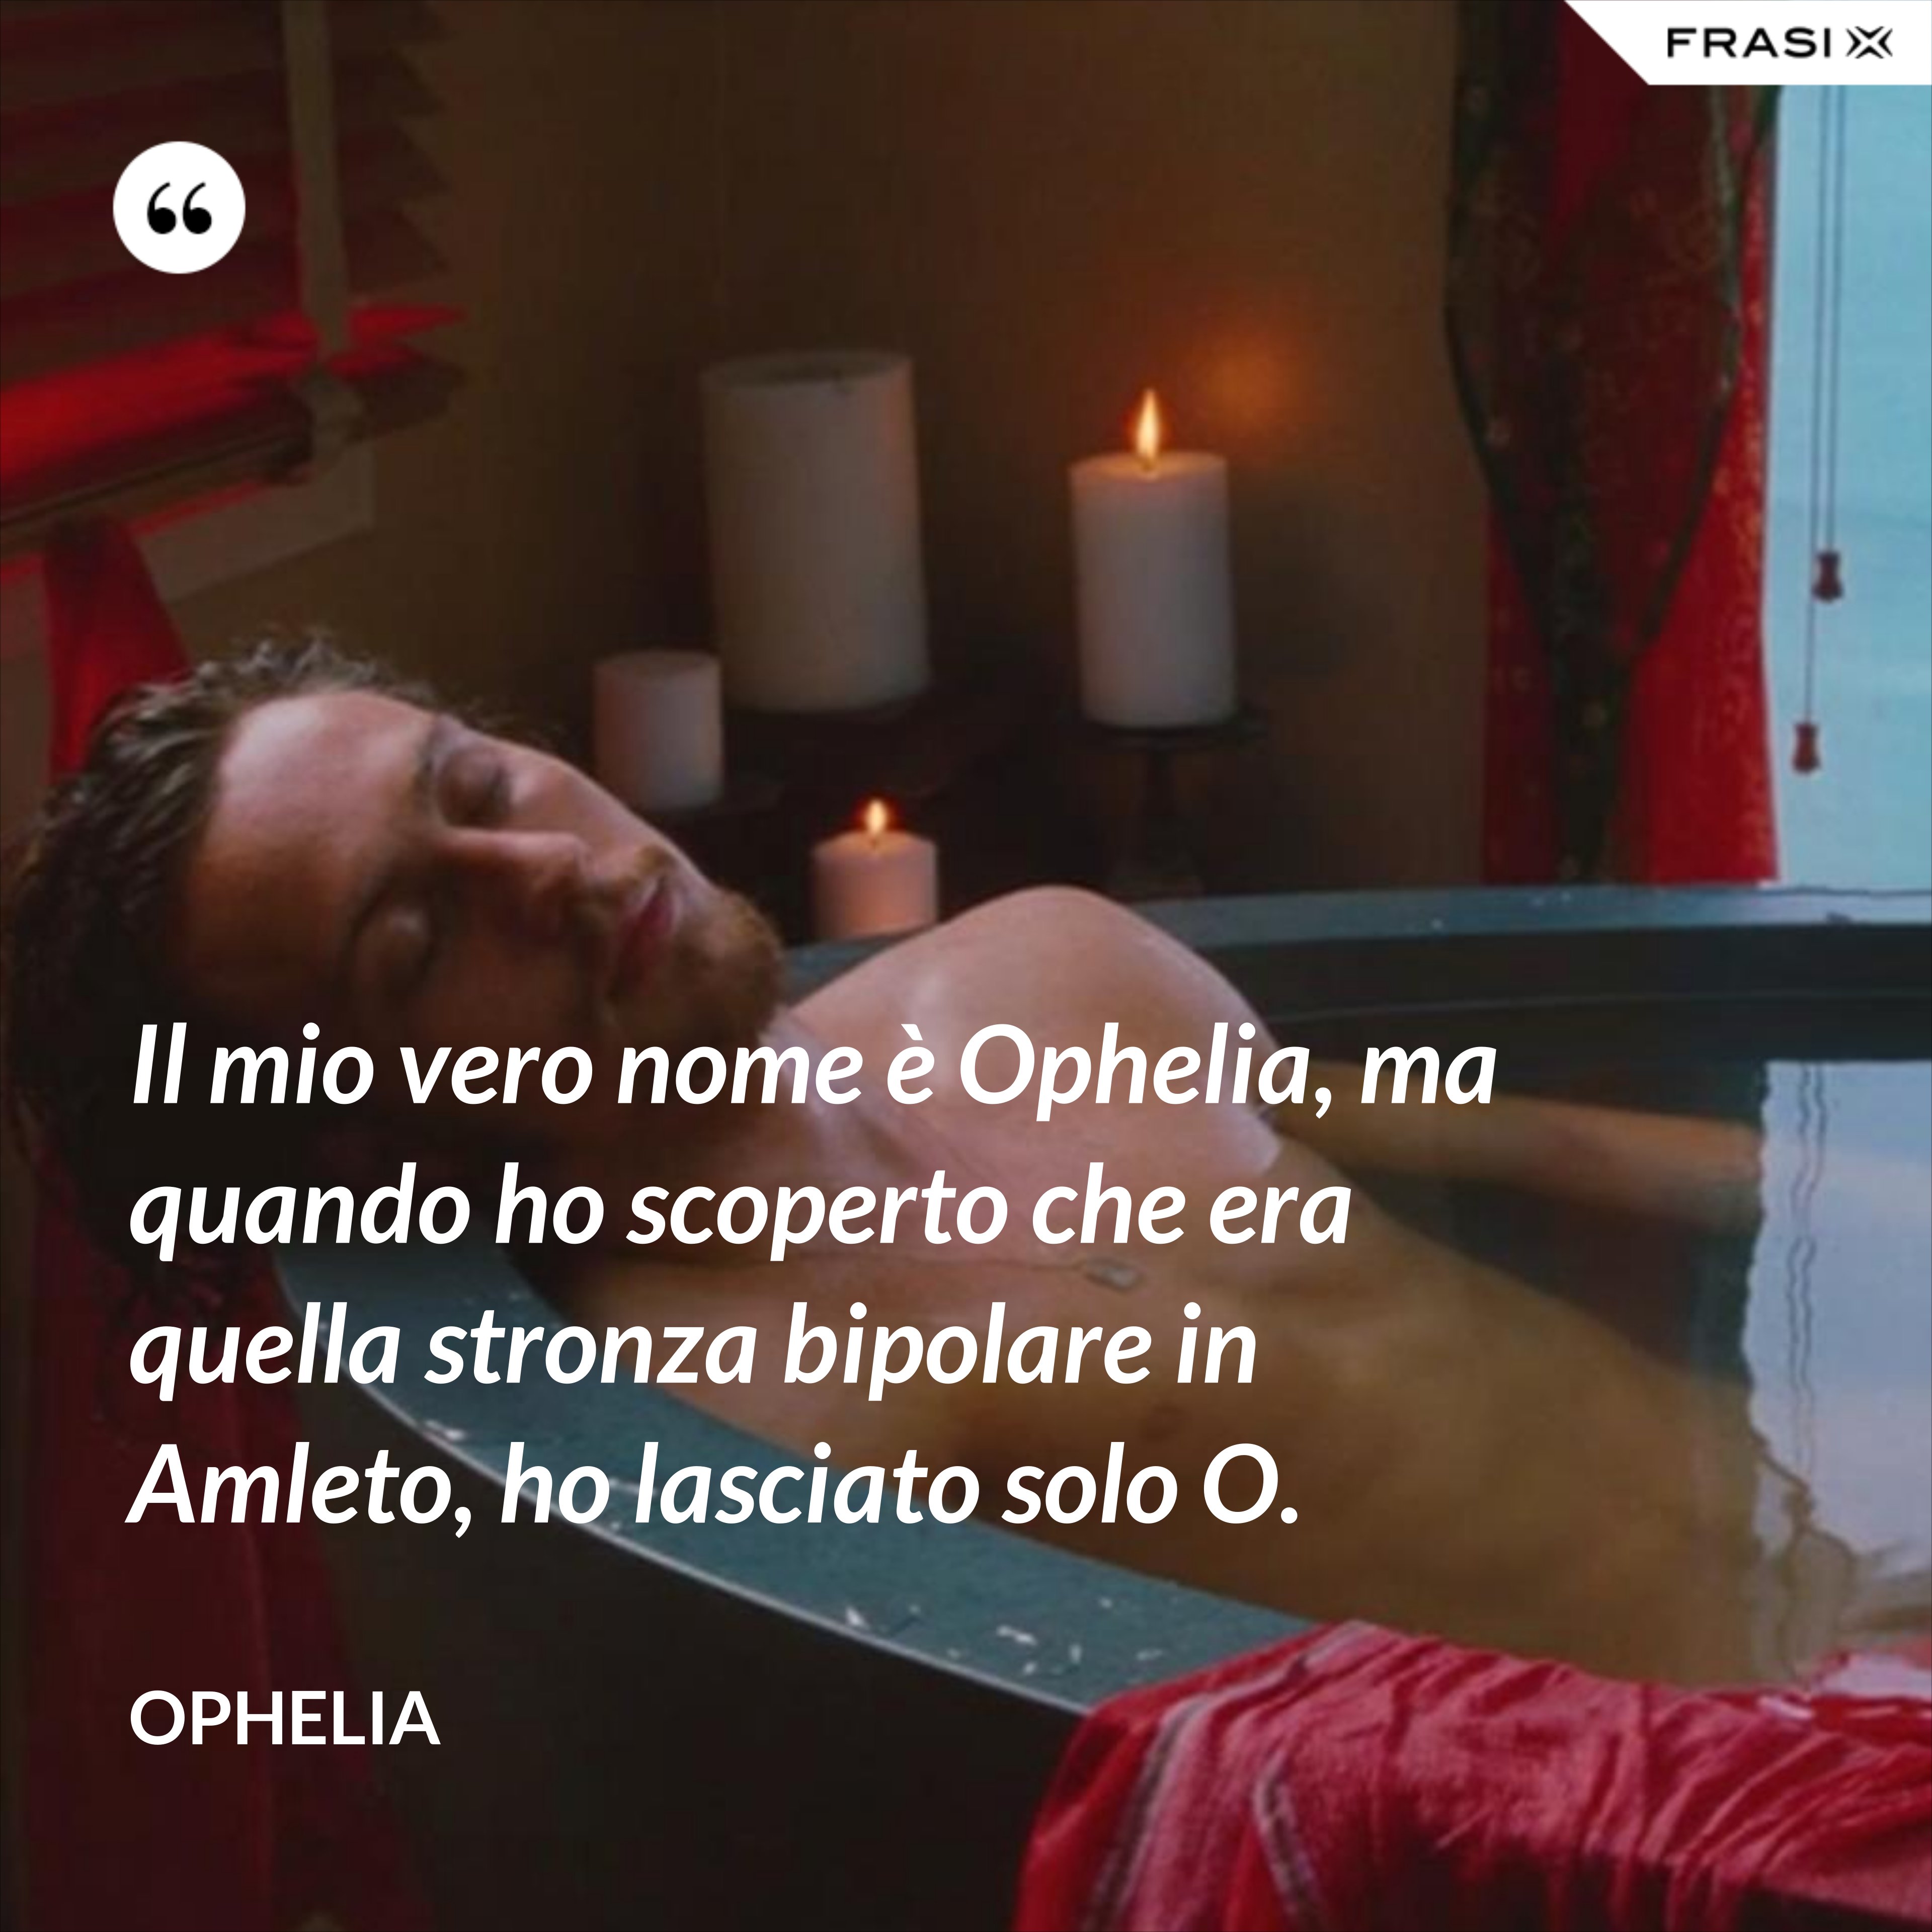 Il mio vero nome è Ophelia, ma quando ho scoperto che era quella stronza bipolare in Amleto, ho lasciato solo O. - Ophelia